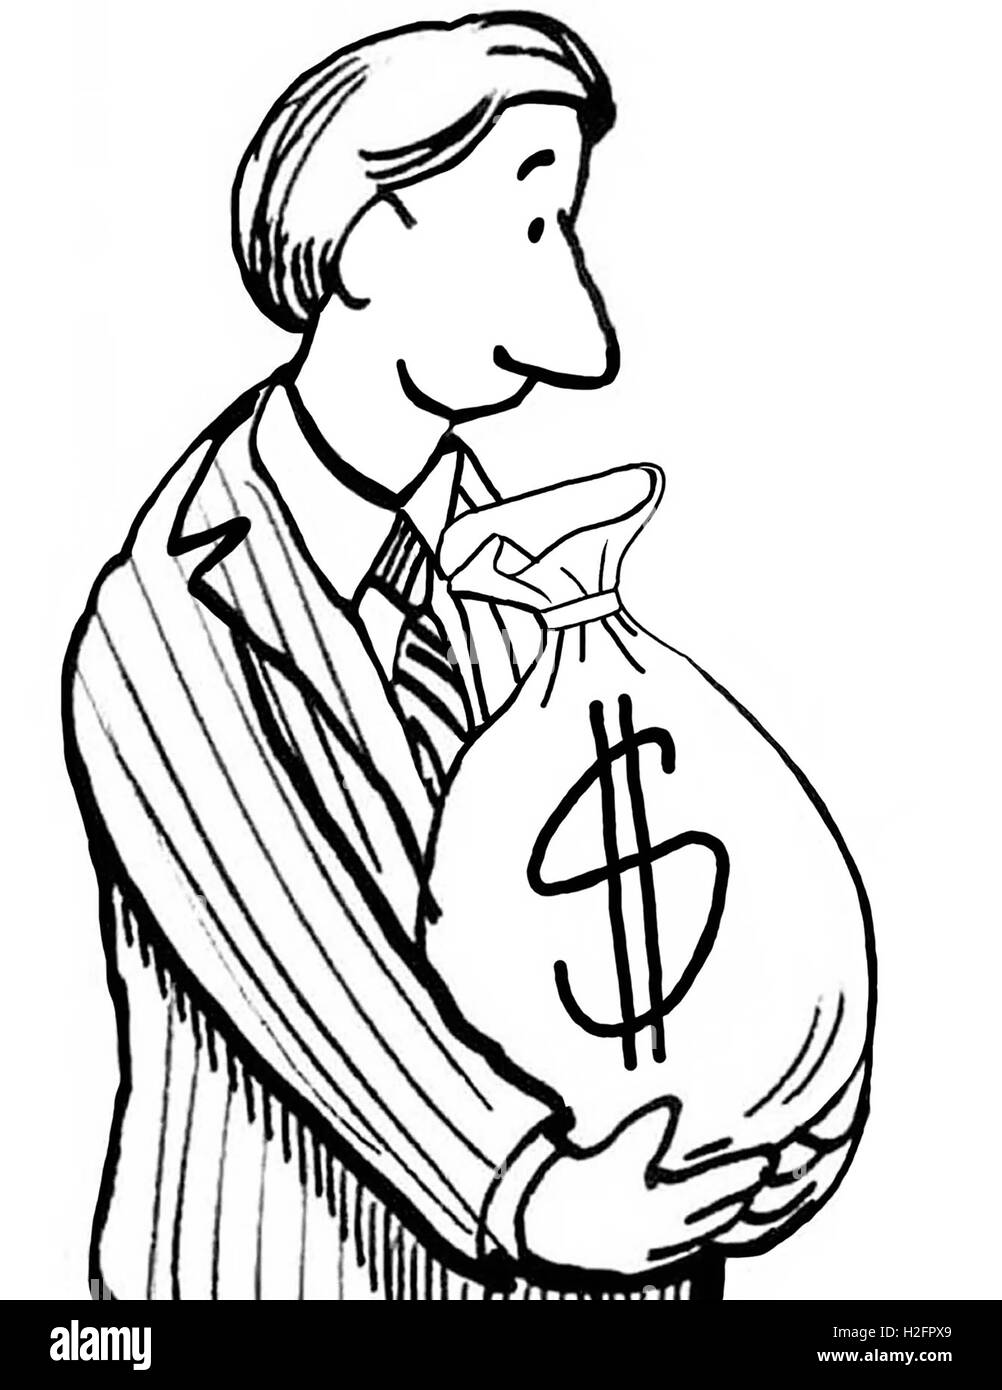 Business b&w illustrazione di un imprenditore sorridente guardando verso il basso in corrispondenza di un sacchetto di denaro che egli è in possesso. Foto Stock